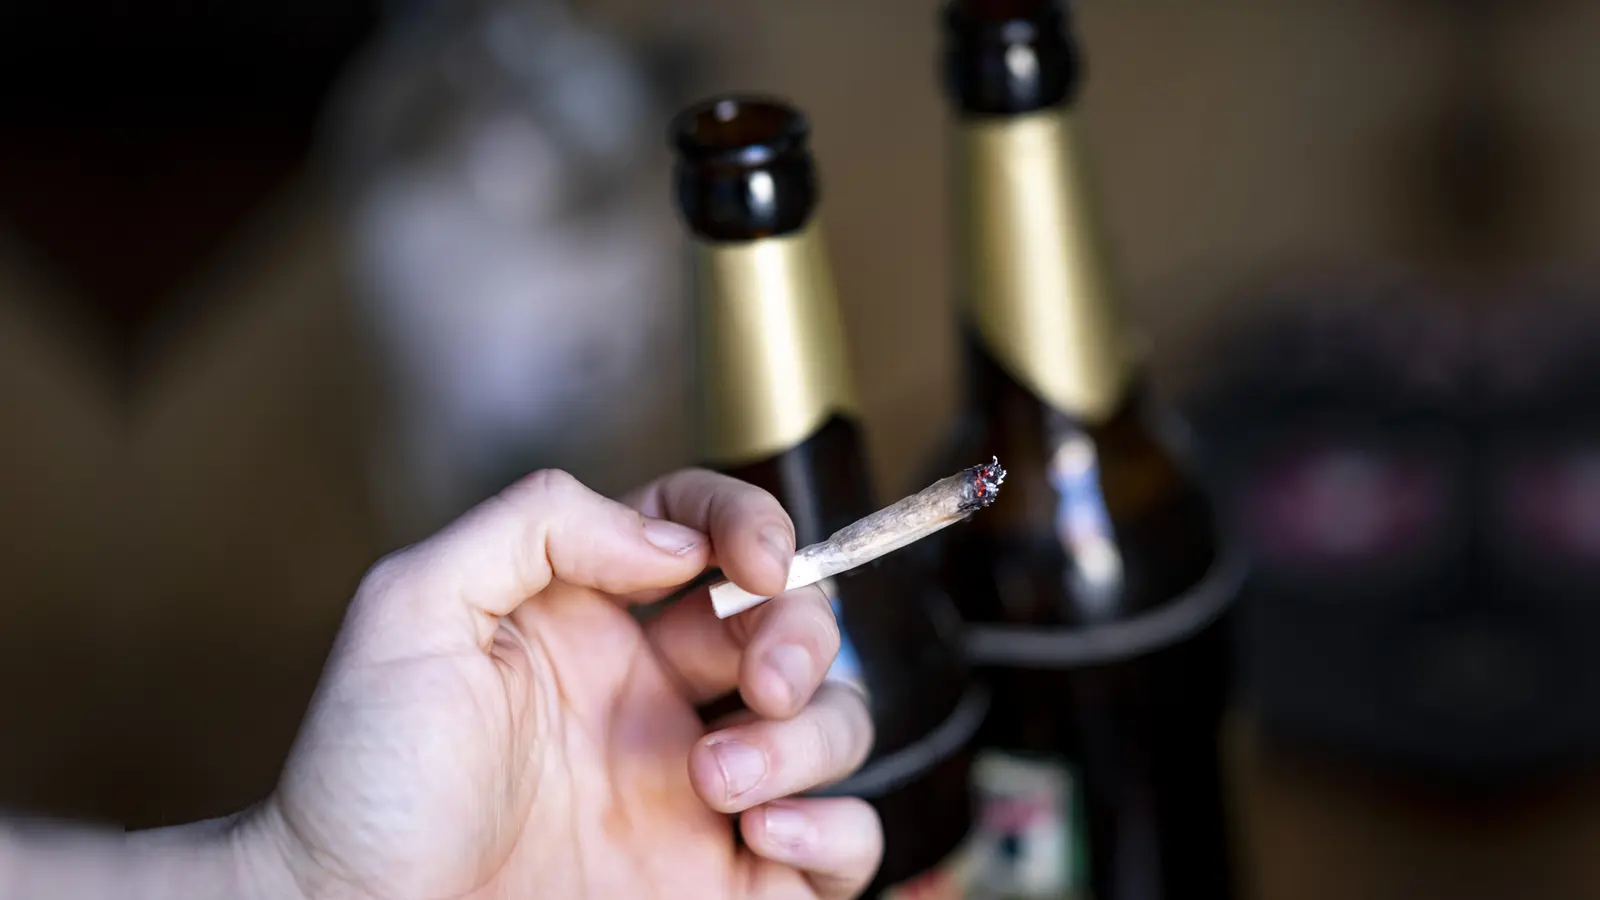 Alkohol oder Cannabis - was ist schlechter für Körper und Psyche? (Symbolbild: Fabian Sommer)